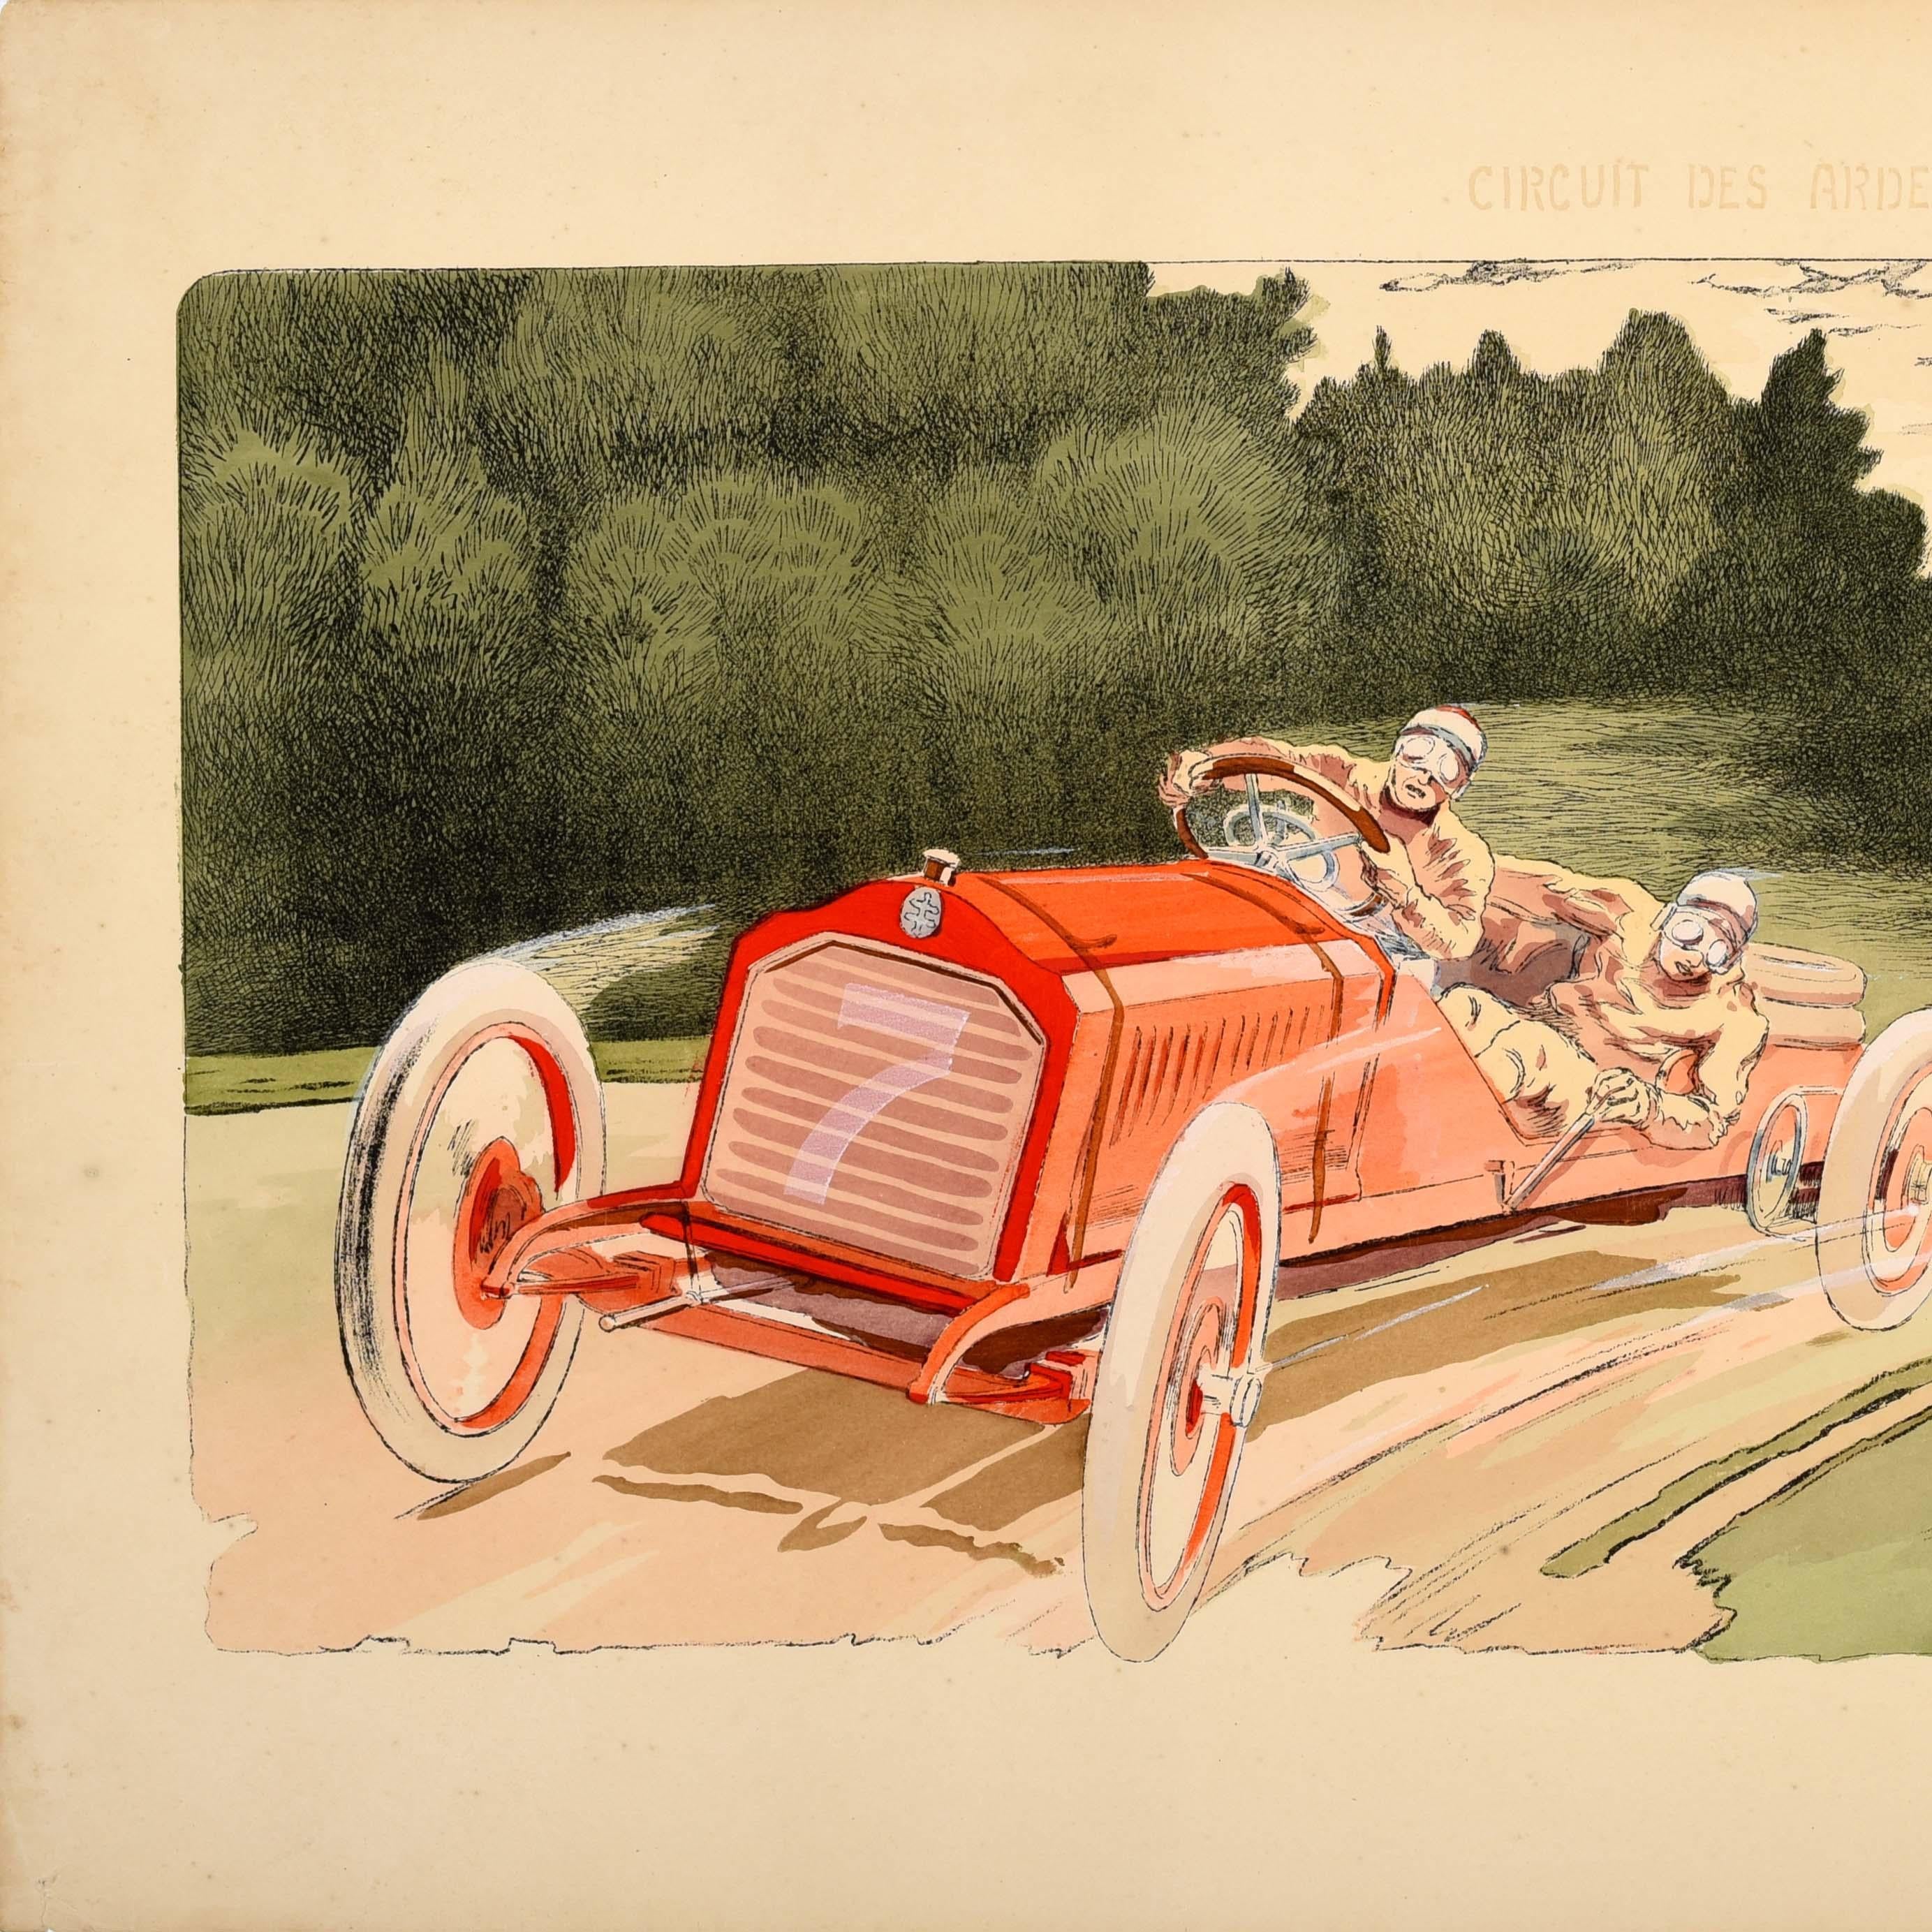 French Original Vintage Motorsport Poster Circuit Des Ardennes Belge 1906 Arthur Duray For Sale